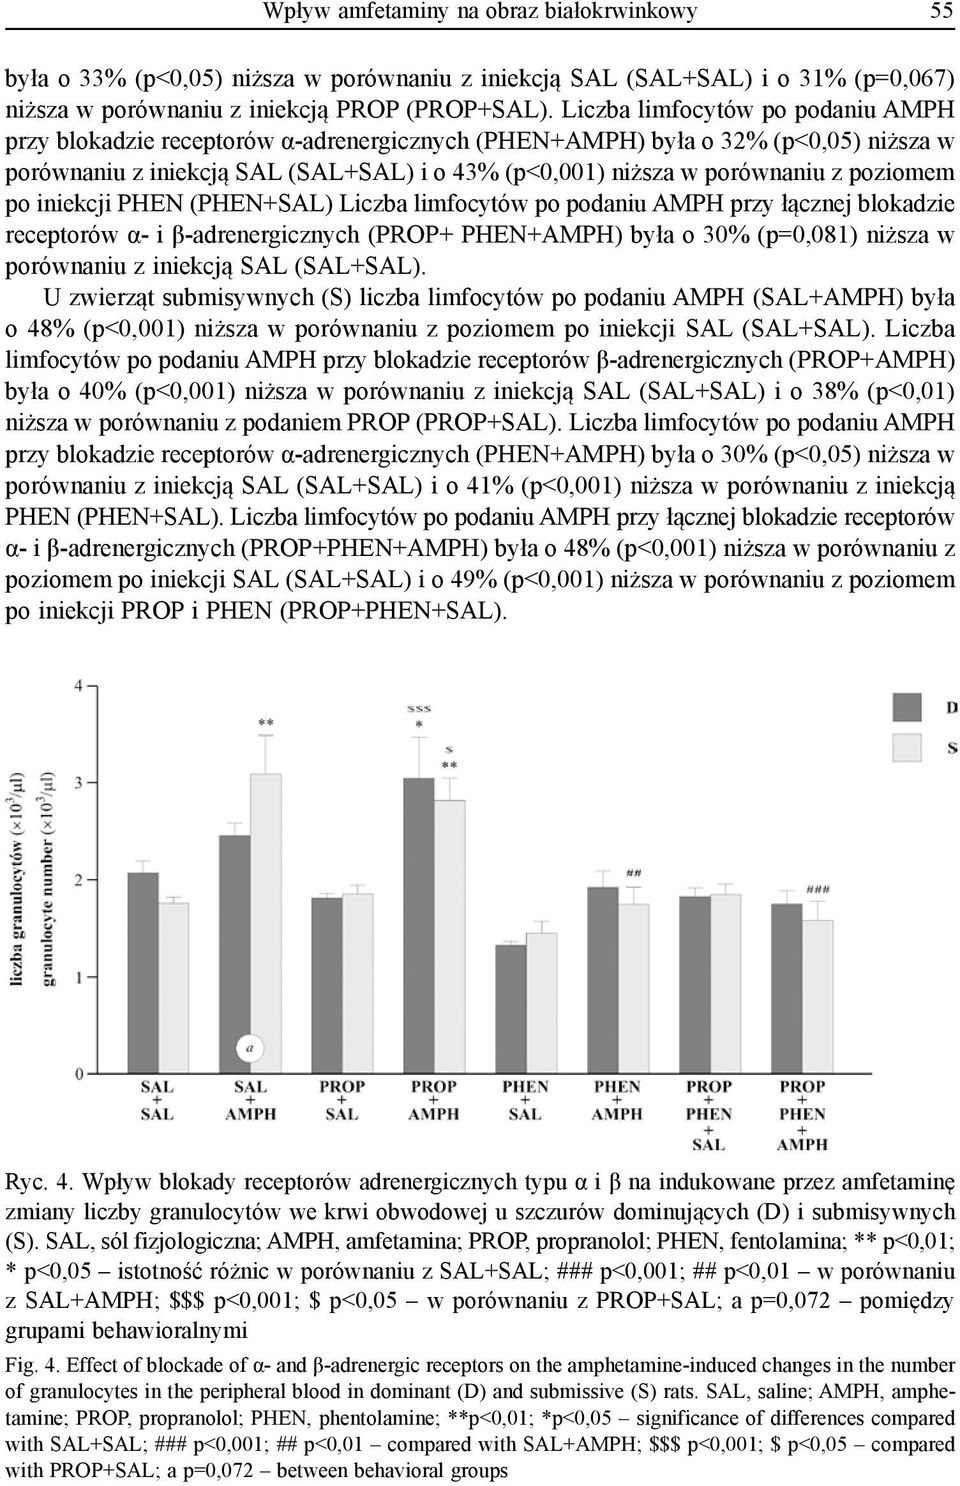 poziomem po iniekcji PHEN (PHEN+SAL) Liczba limfocytów po podaniu AMPH przy łącznej blokadzie receptorów α- i β-adrenergicznych (PROP+ PHEN+AMPH) była o 30% (p=0,081) niższa w porównaniu z iniekcją